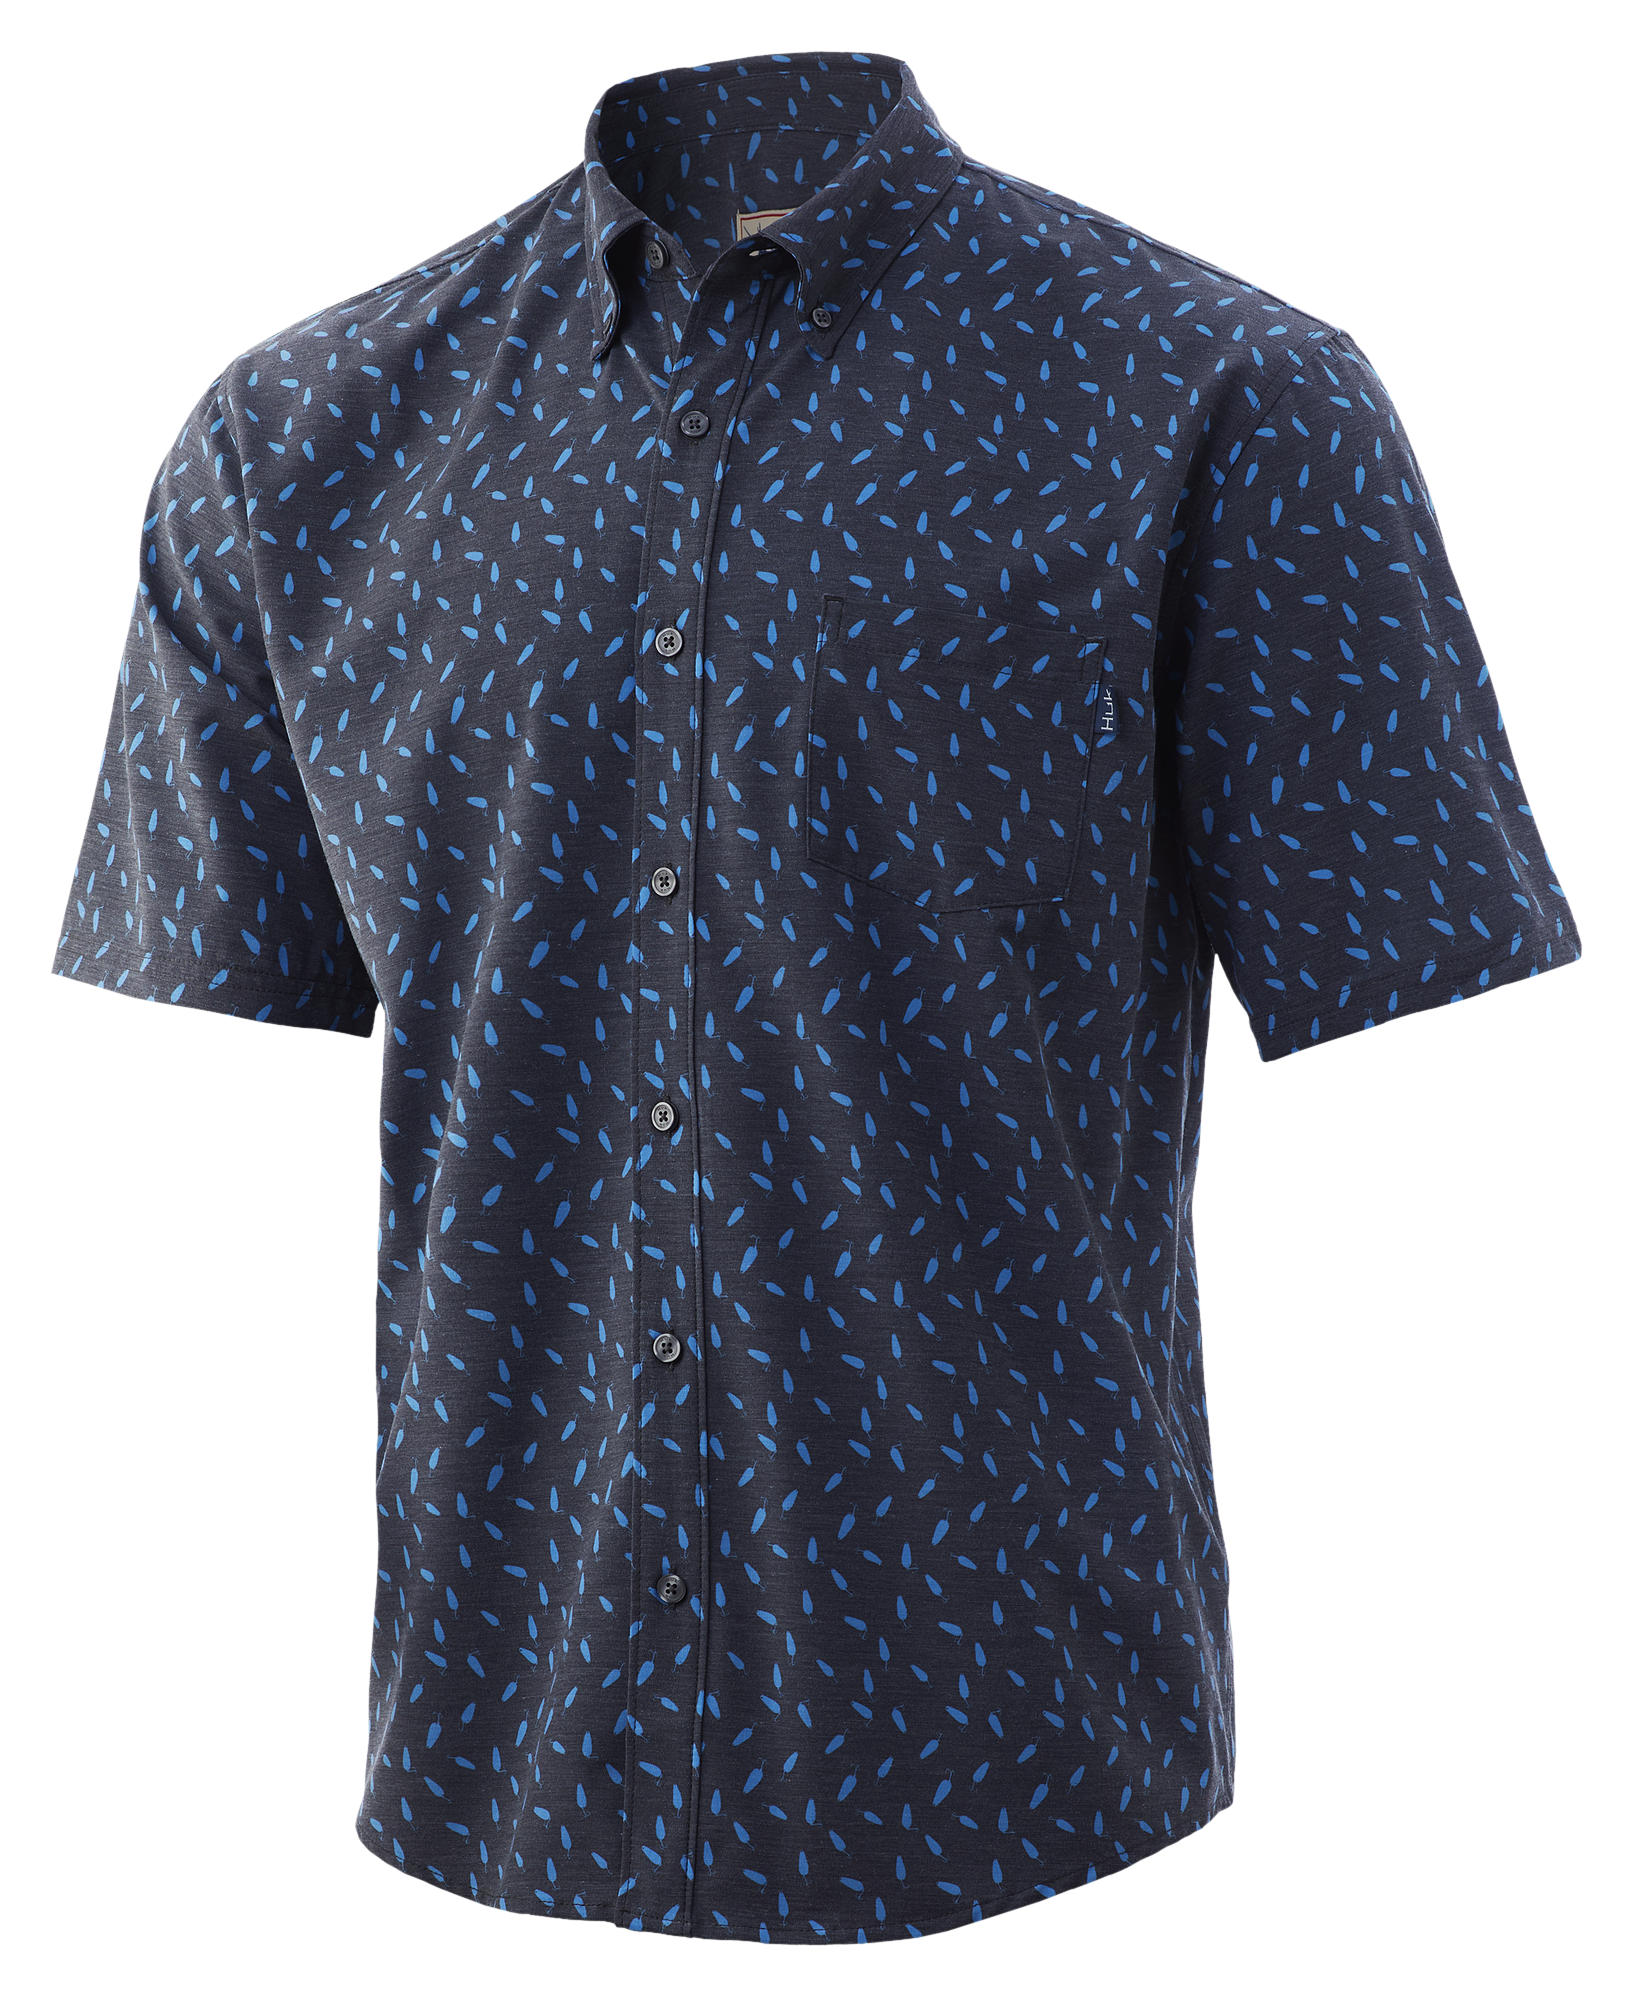 Huk Kona Lure Splash Short-Sleeve Shirt for Men